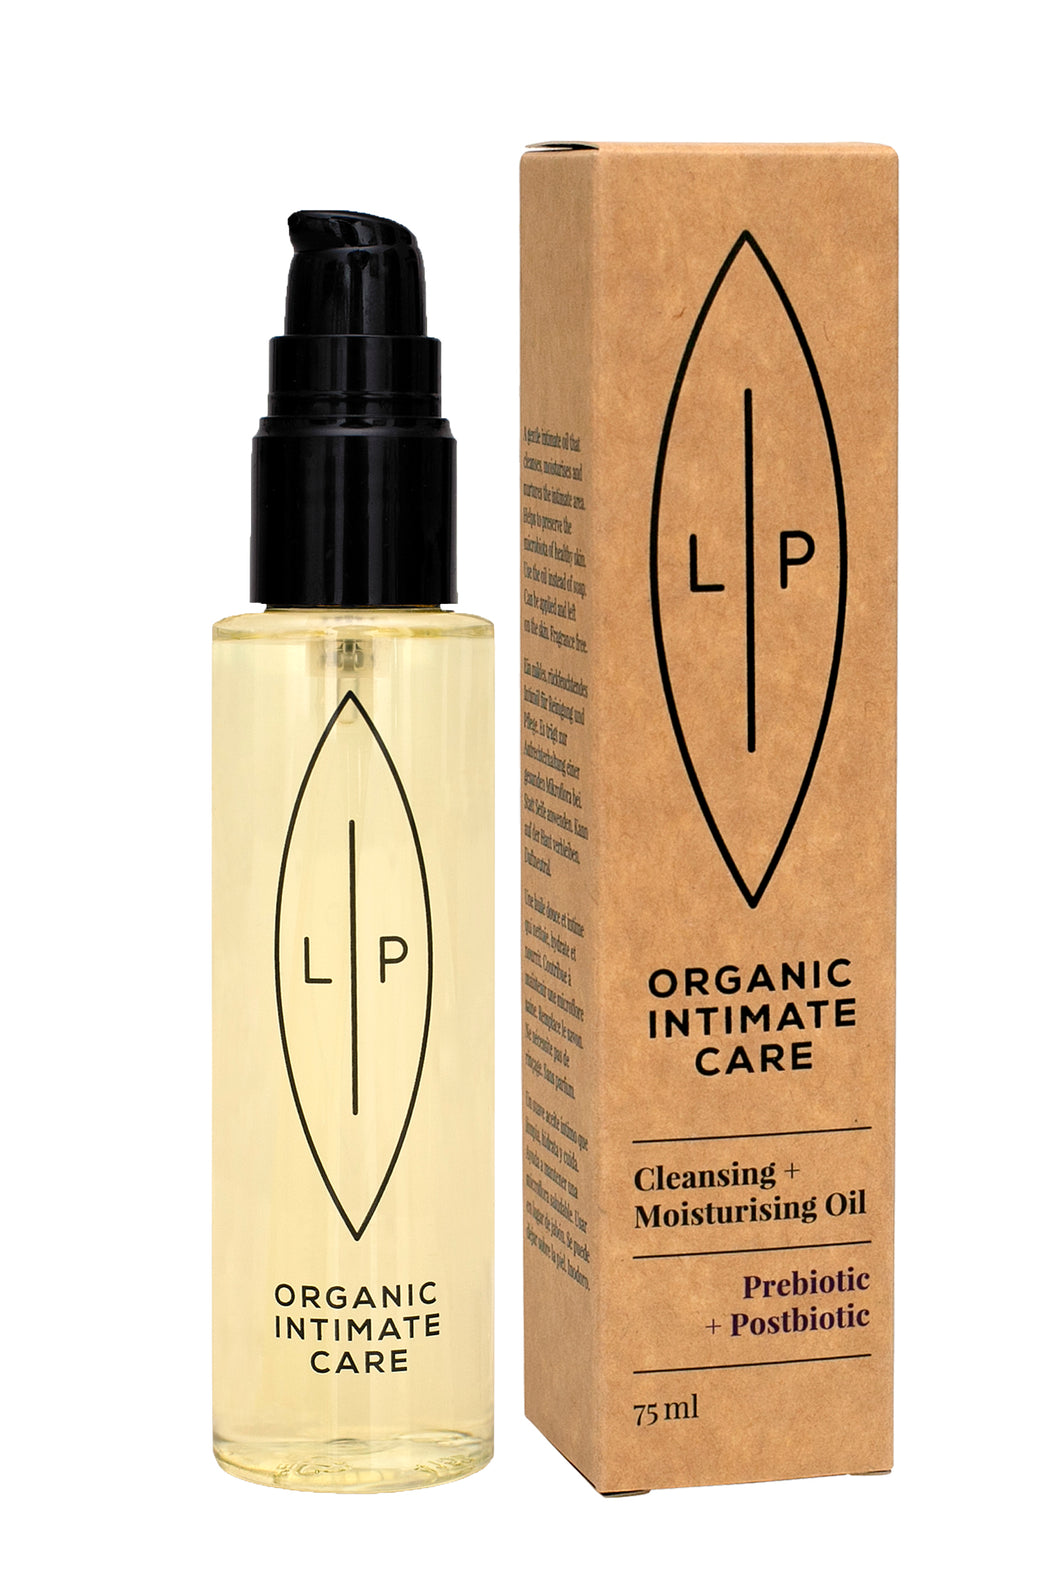 LIP Organic Intimate Care: Cleansing + Moisturising Oil, Prebiotic + Postbiotic